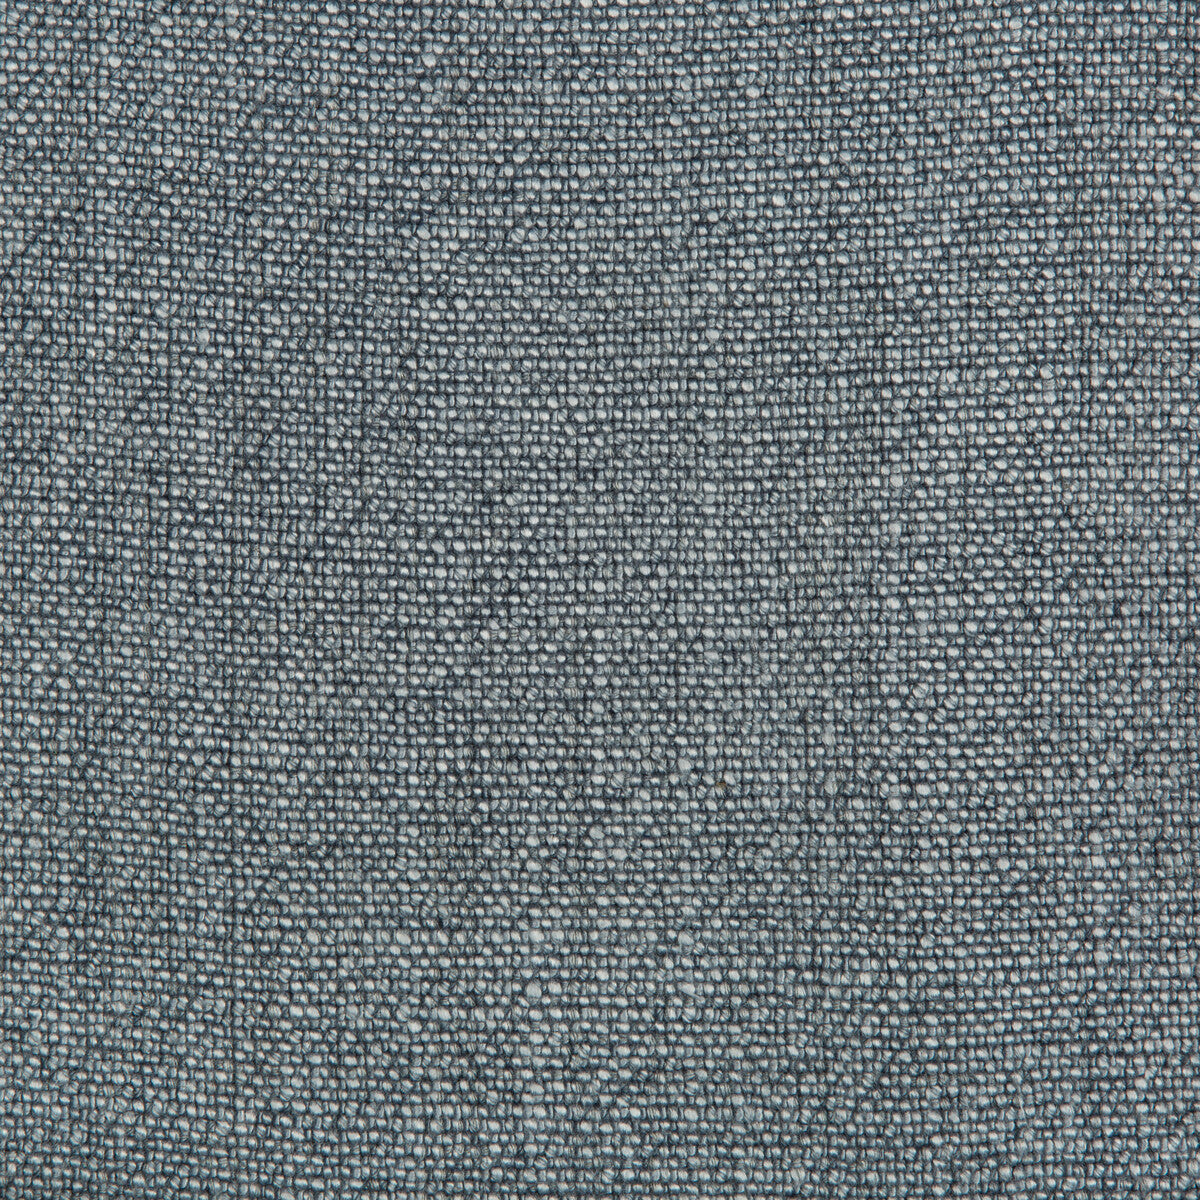 Kravet Basics fabric in 35189-511 color - pattern 35189.511.0 - by Kravet Basics